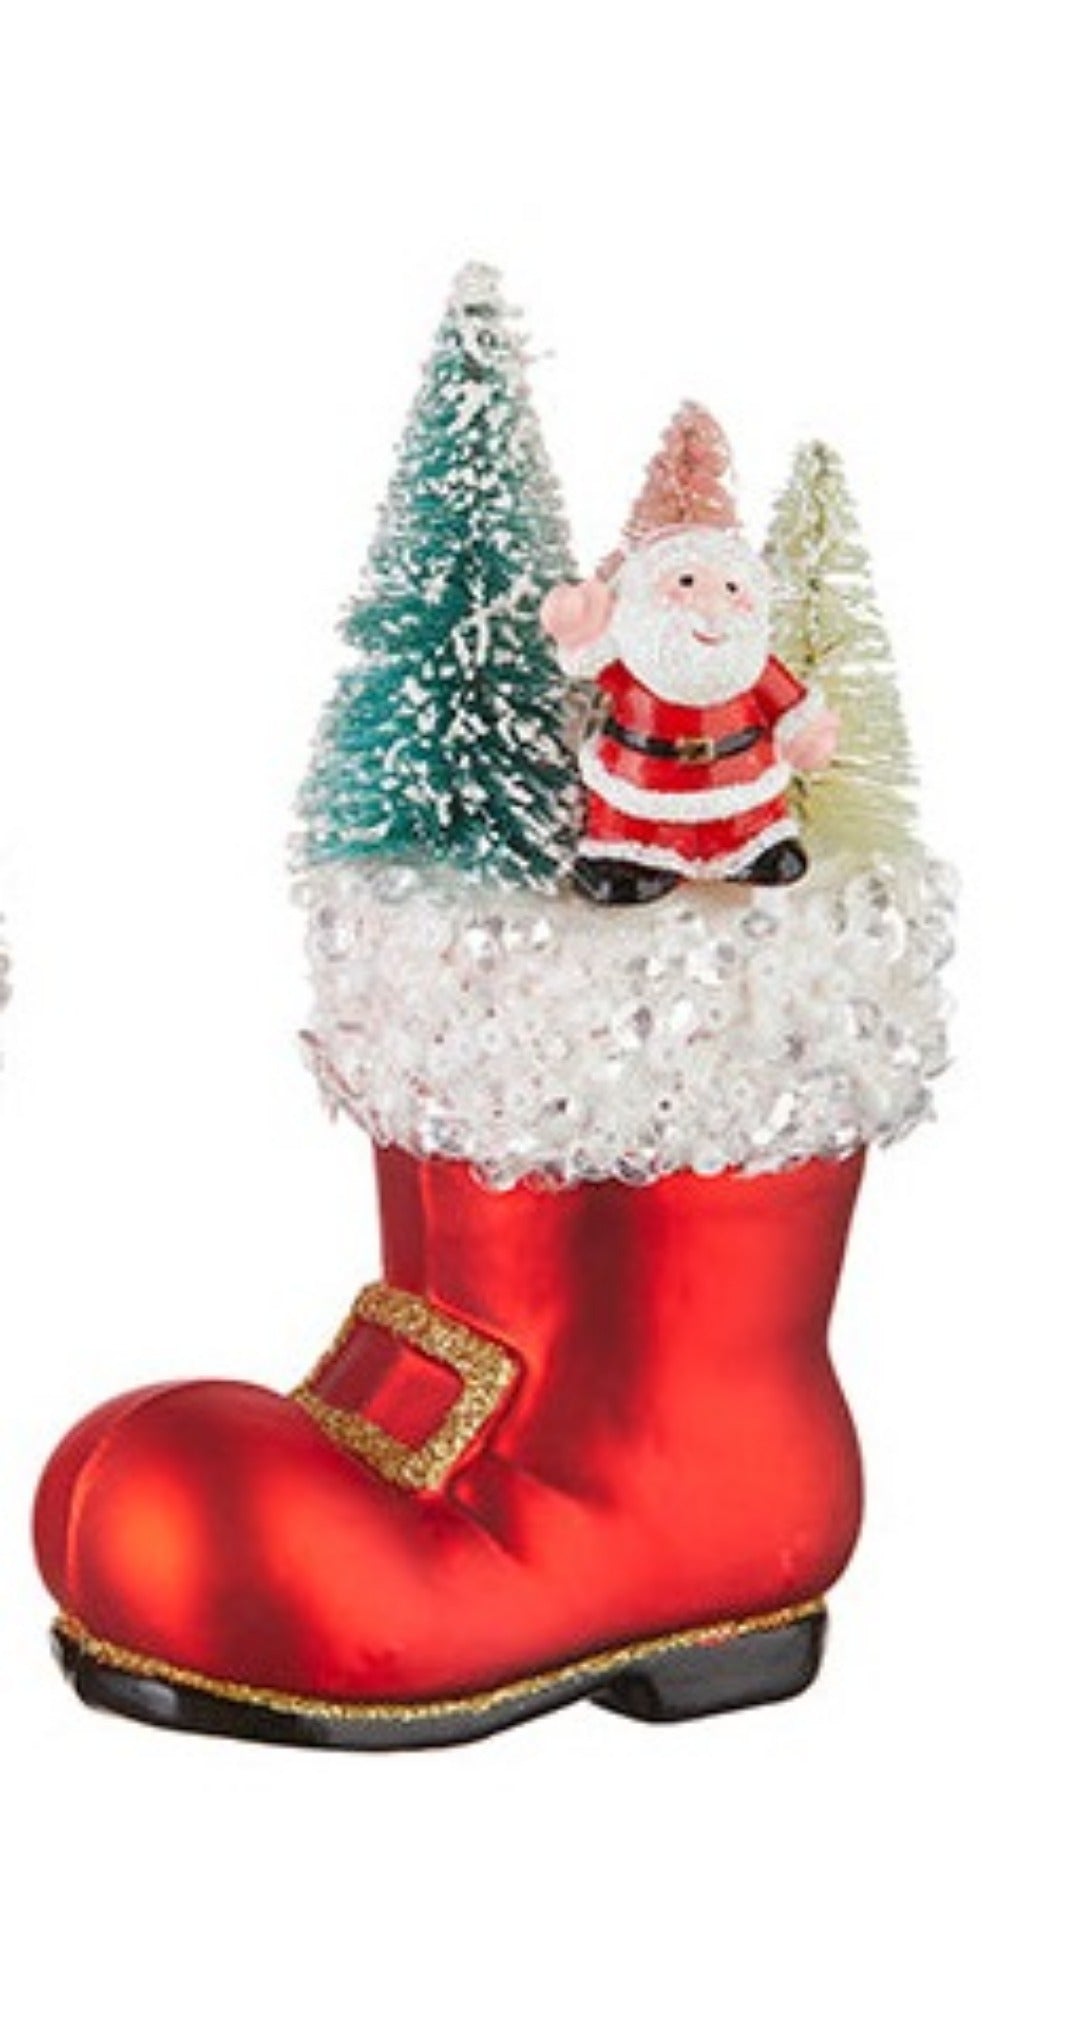 Santa Boot Ornament with Santa and Trees